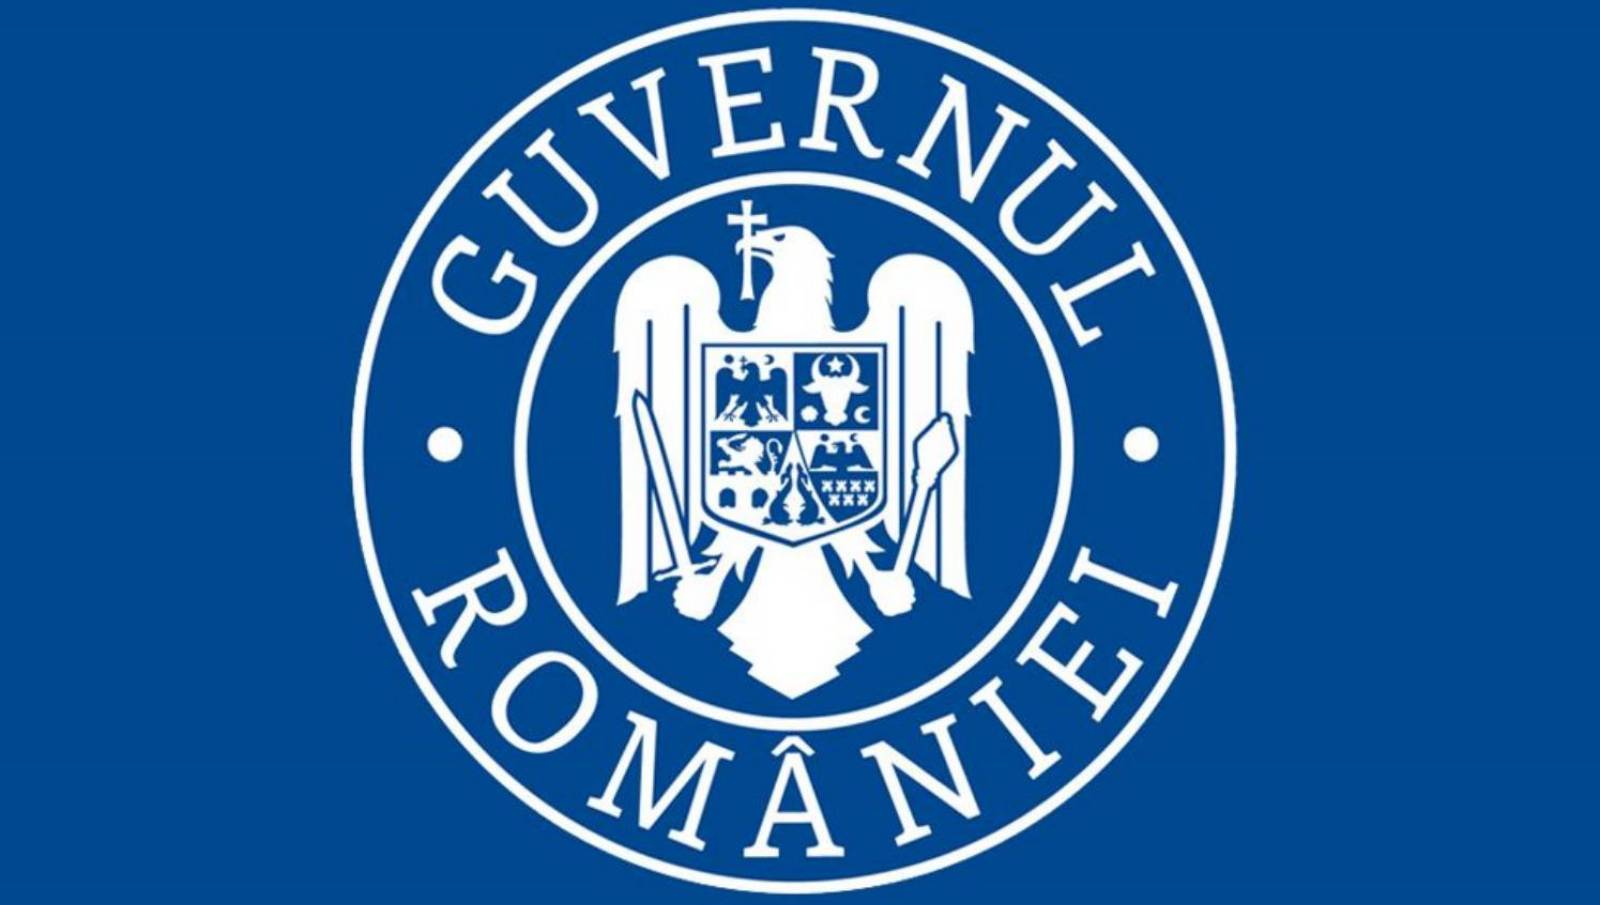 De Roemeense regering heeft op 1 september restaurants heropend